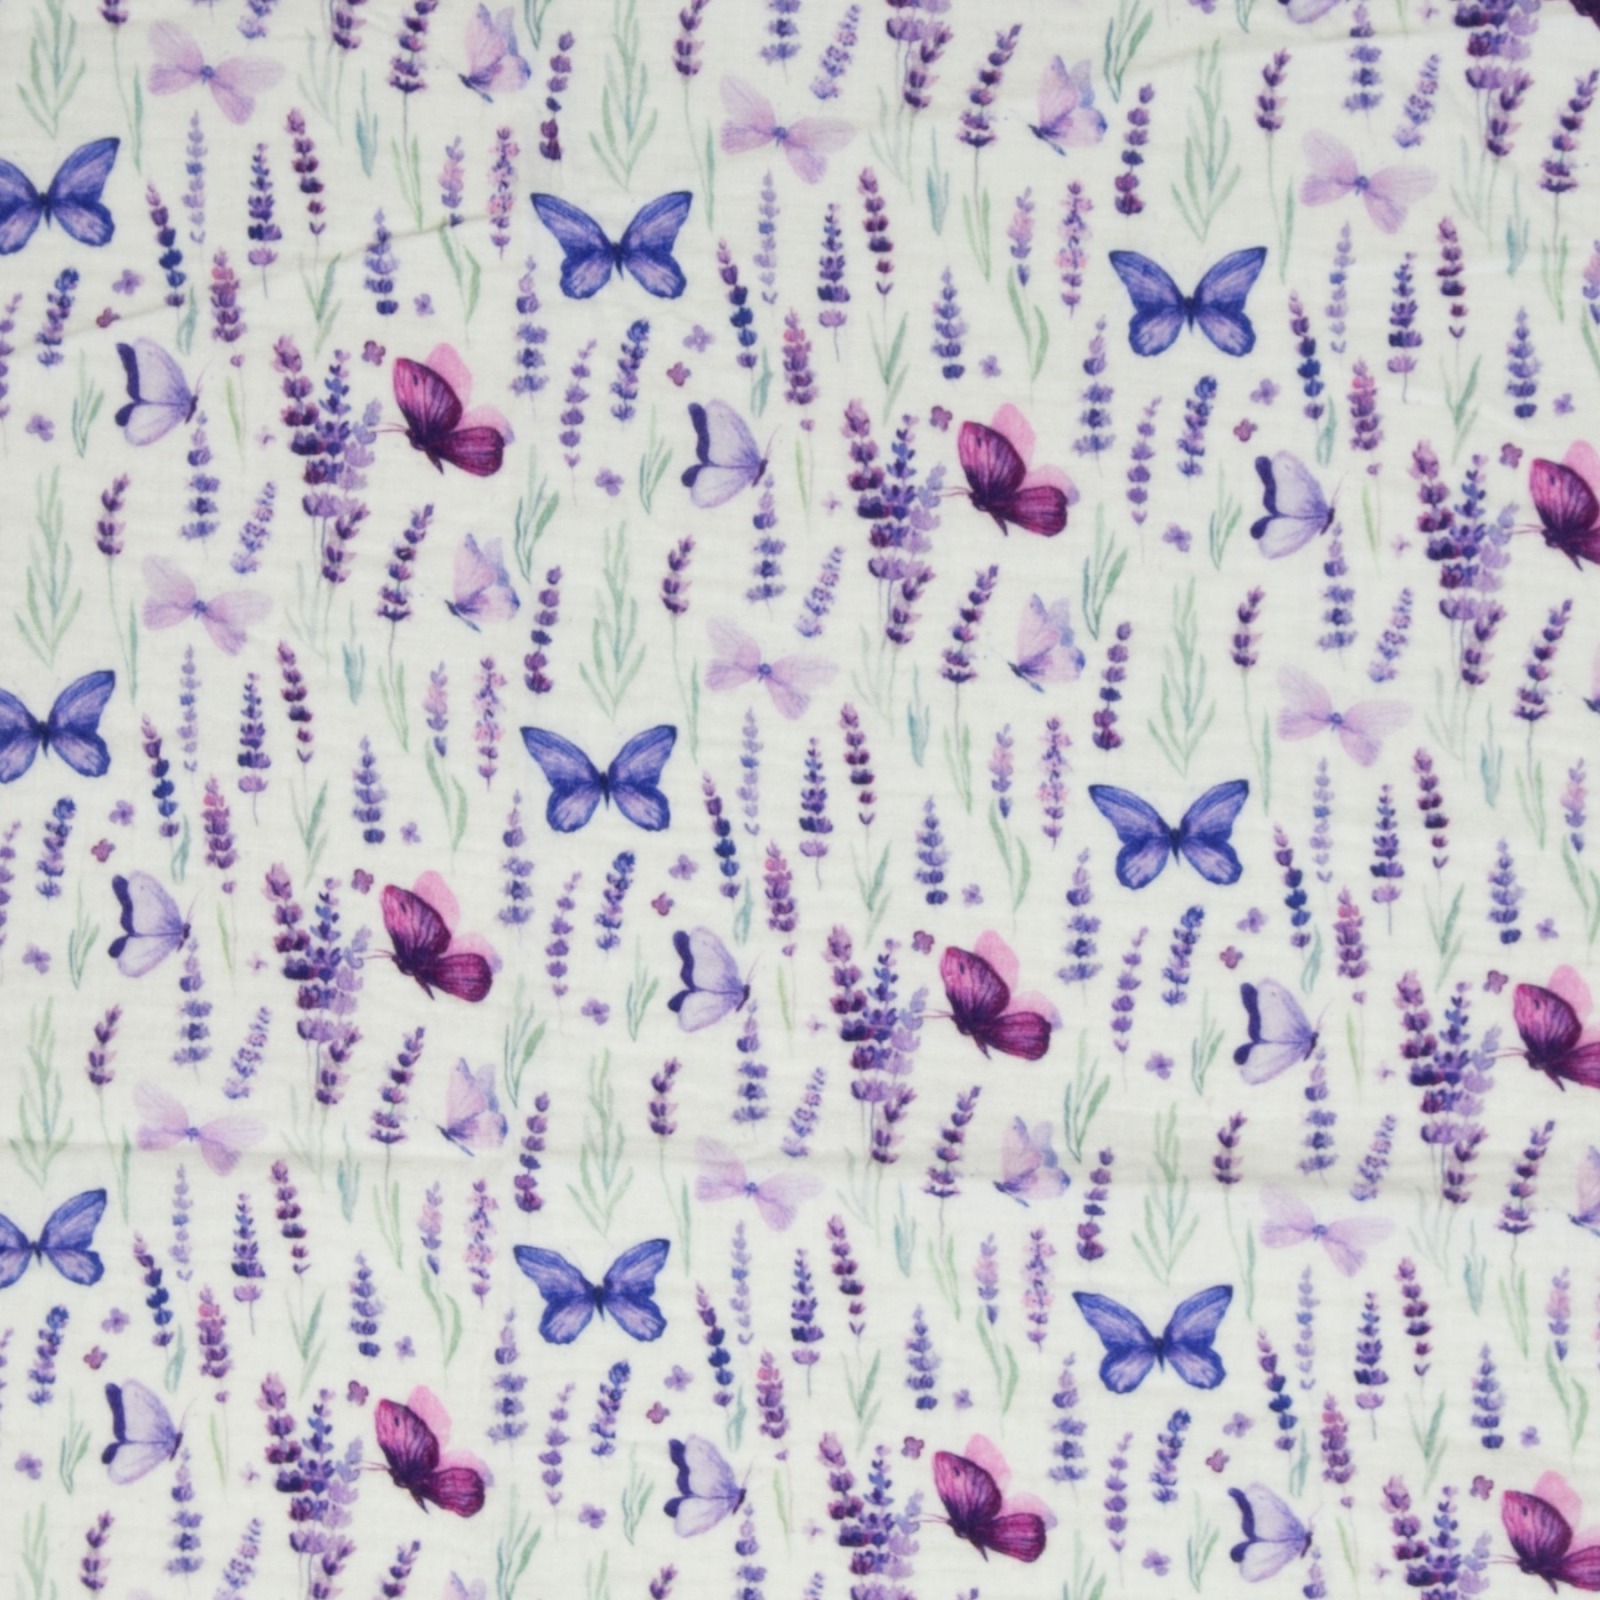 05m Musselin Thea Baumwolle Lavendel Schmetterlinge weiß flieder Lila 3